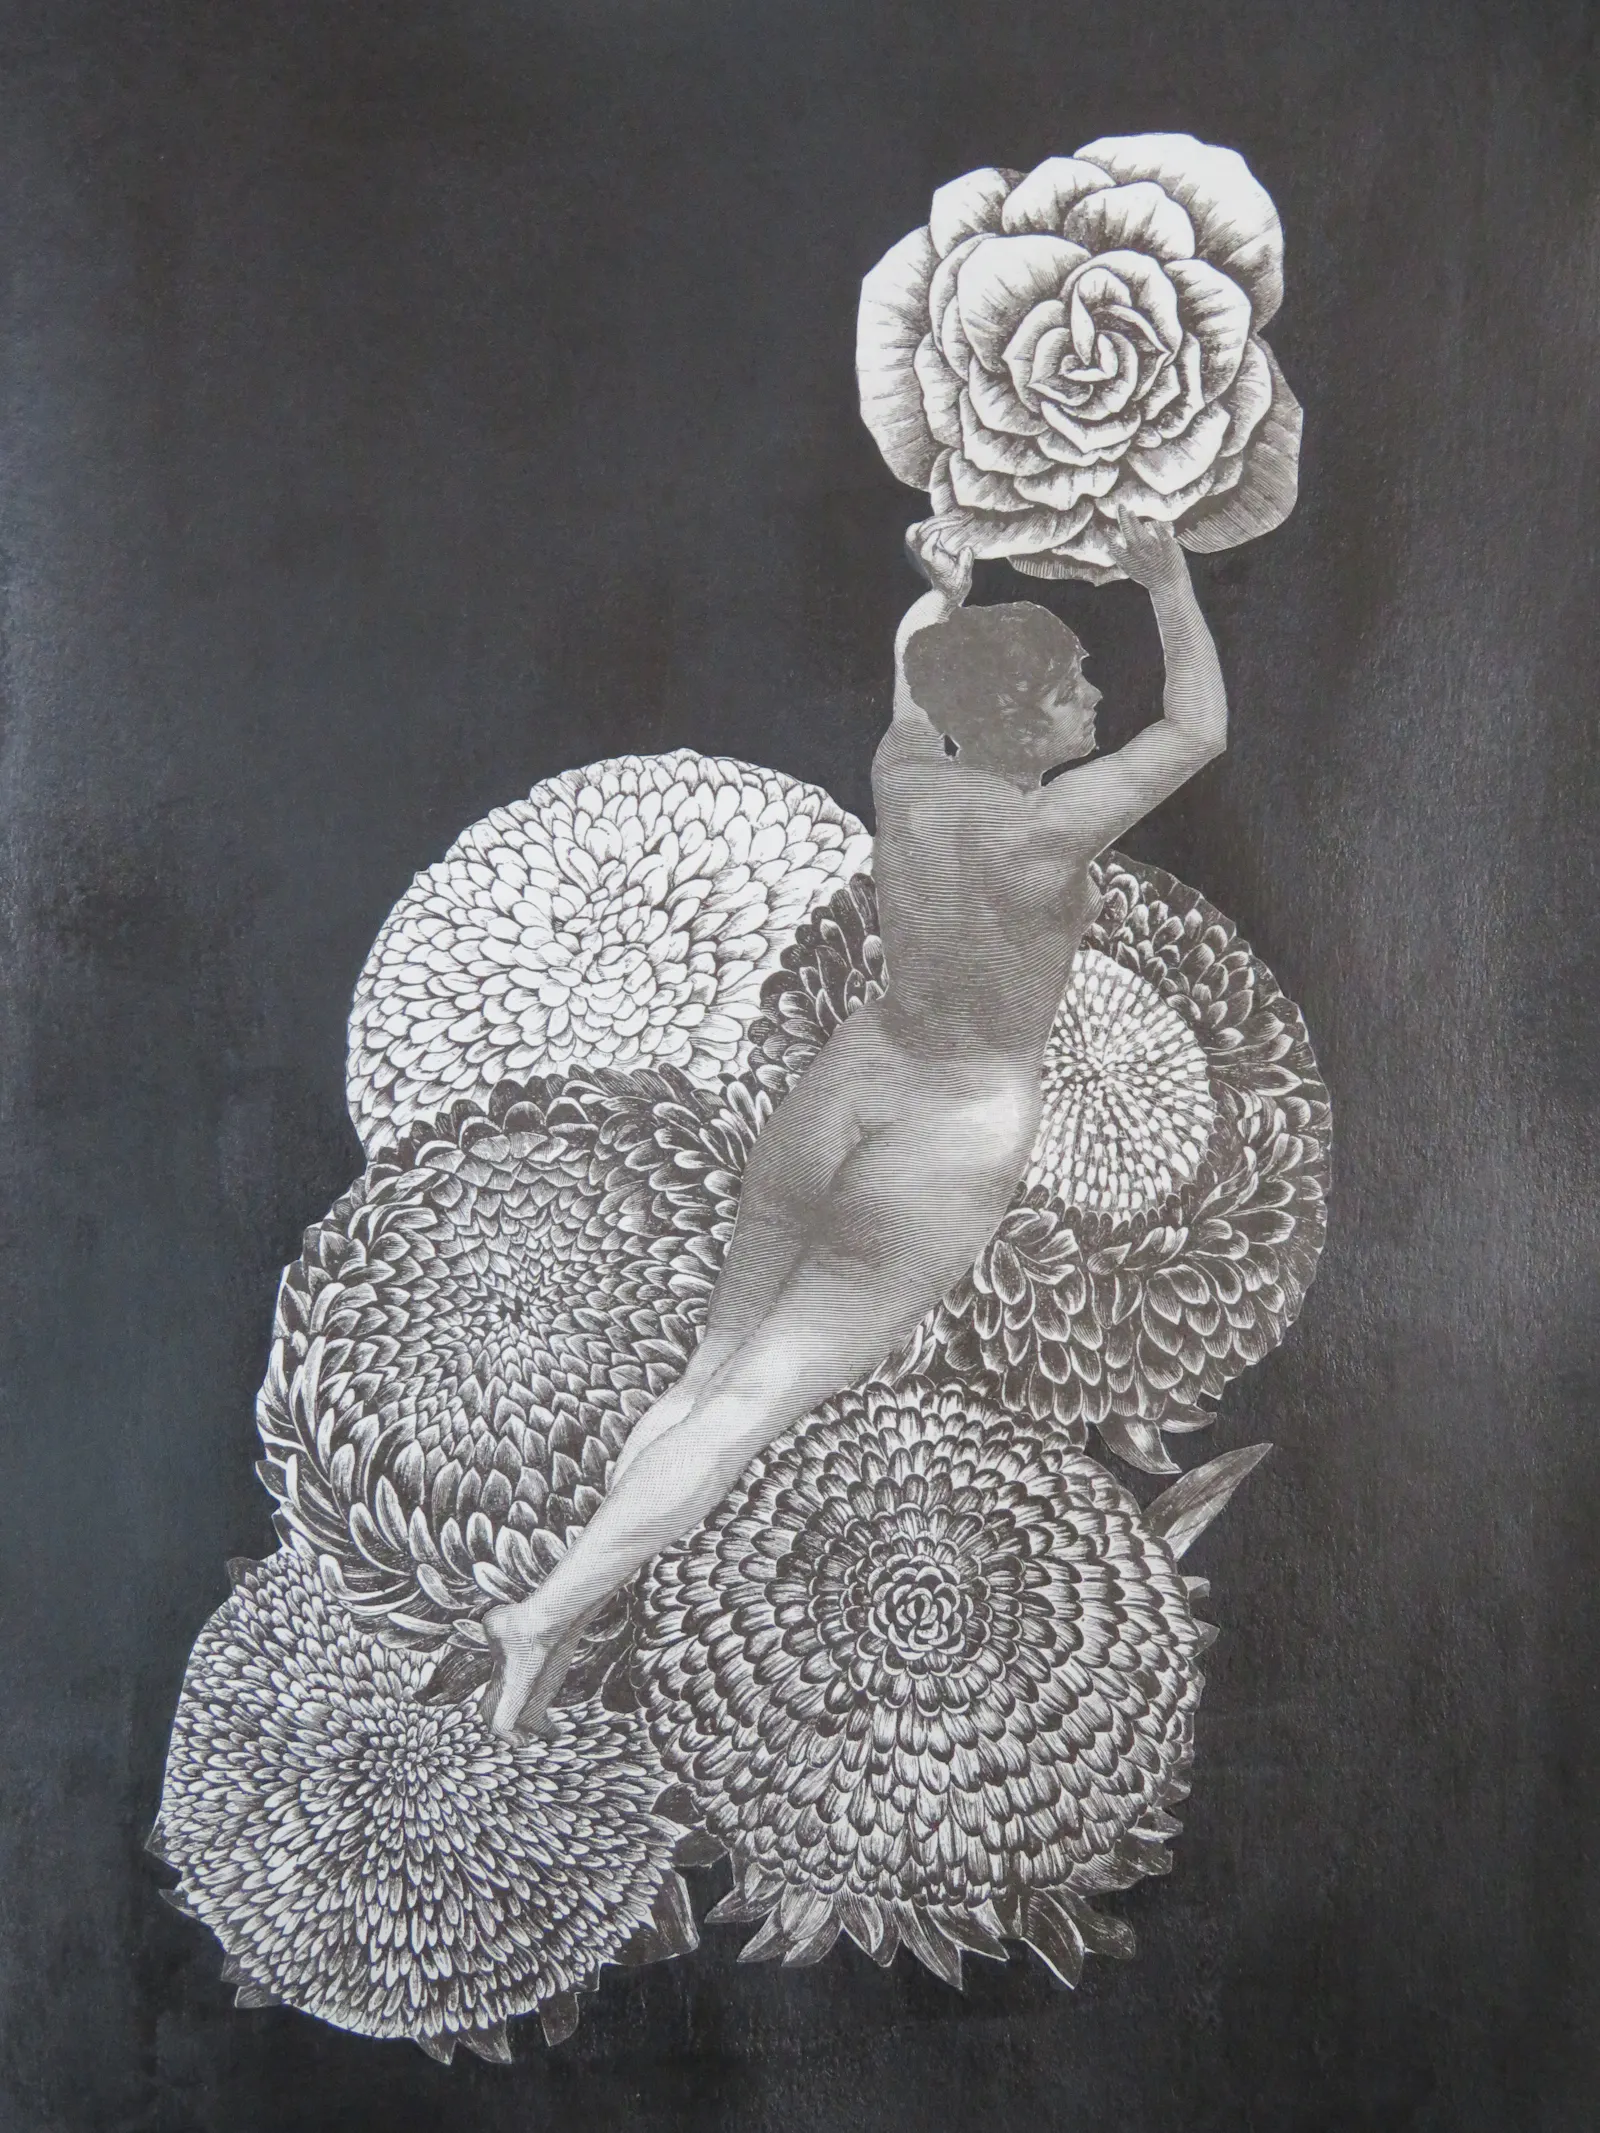 Schwarz-weiß Collage auf schwarz grundiertem Hintergrund. Große runde Blüten machen die Hälfte des Bildes aus. Über den Blüten liegt oder fliegt eine nackte Frau, sie hälte sich an einer anderen großen Blüte fest.